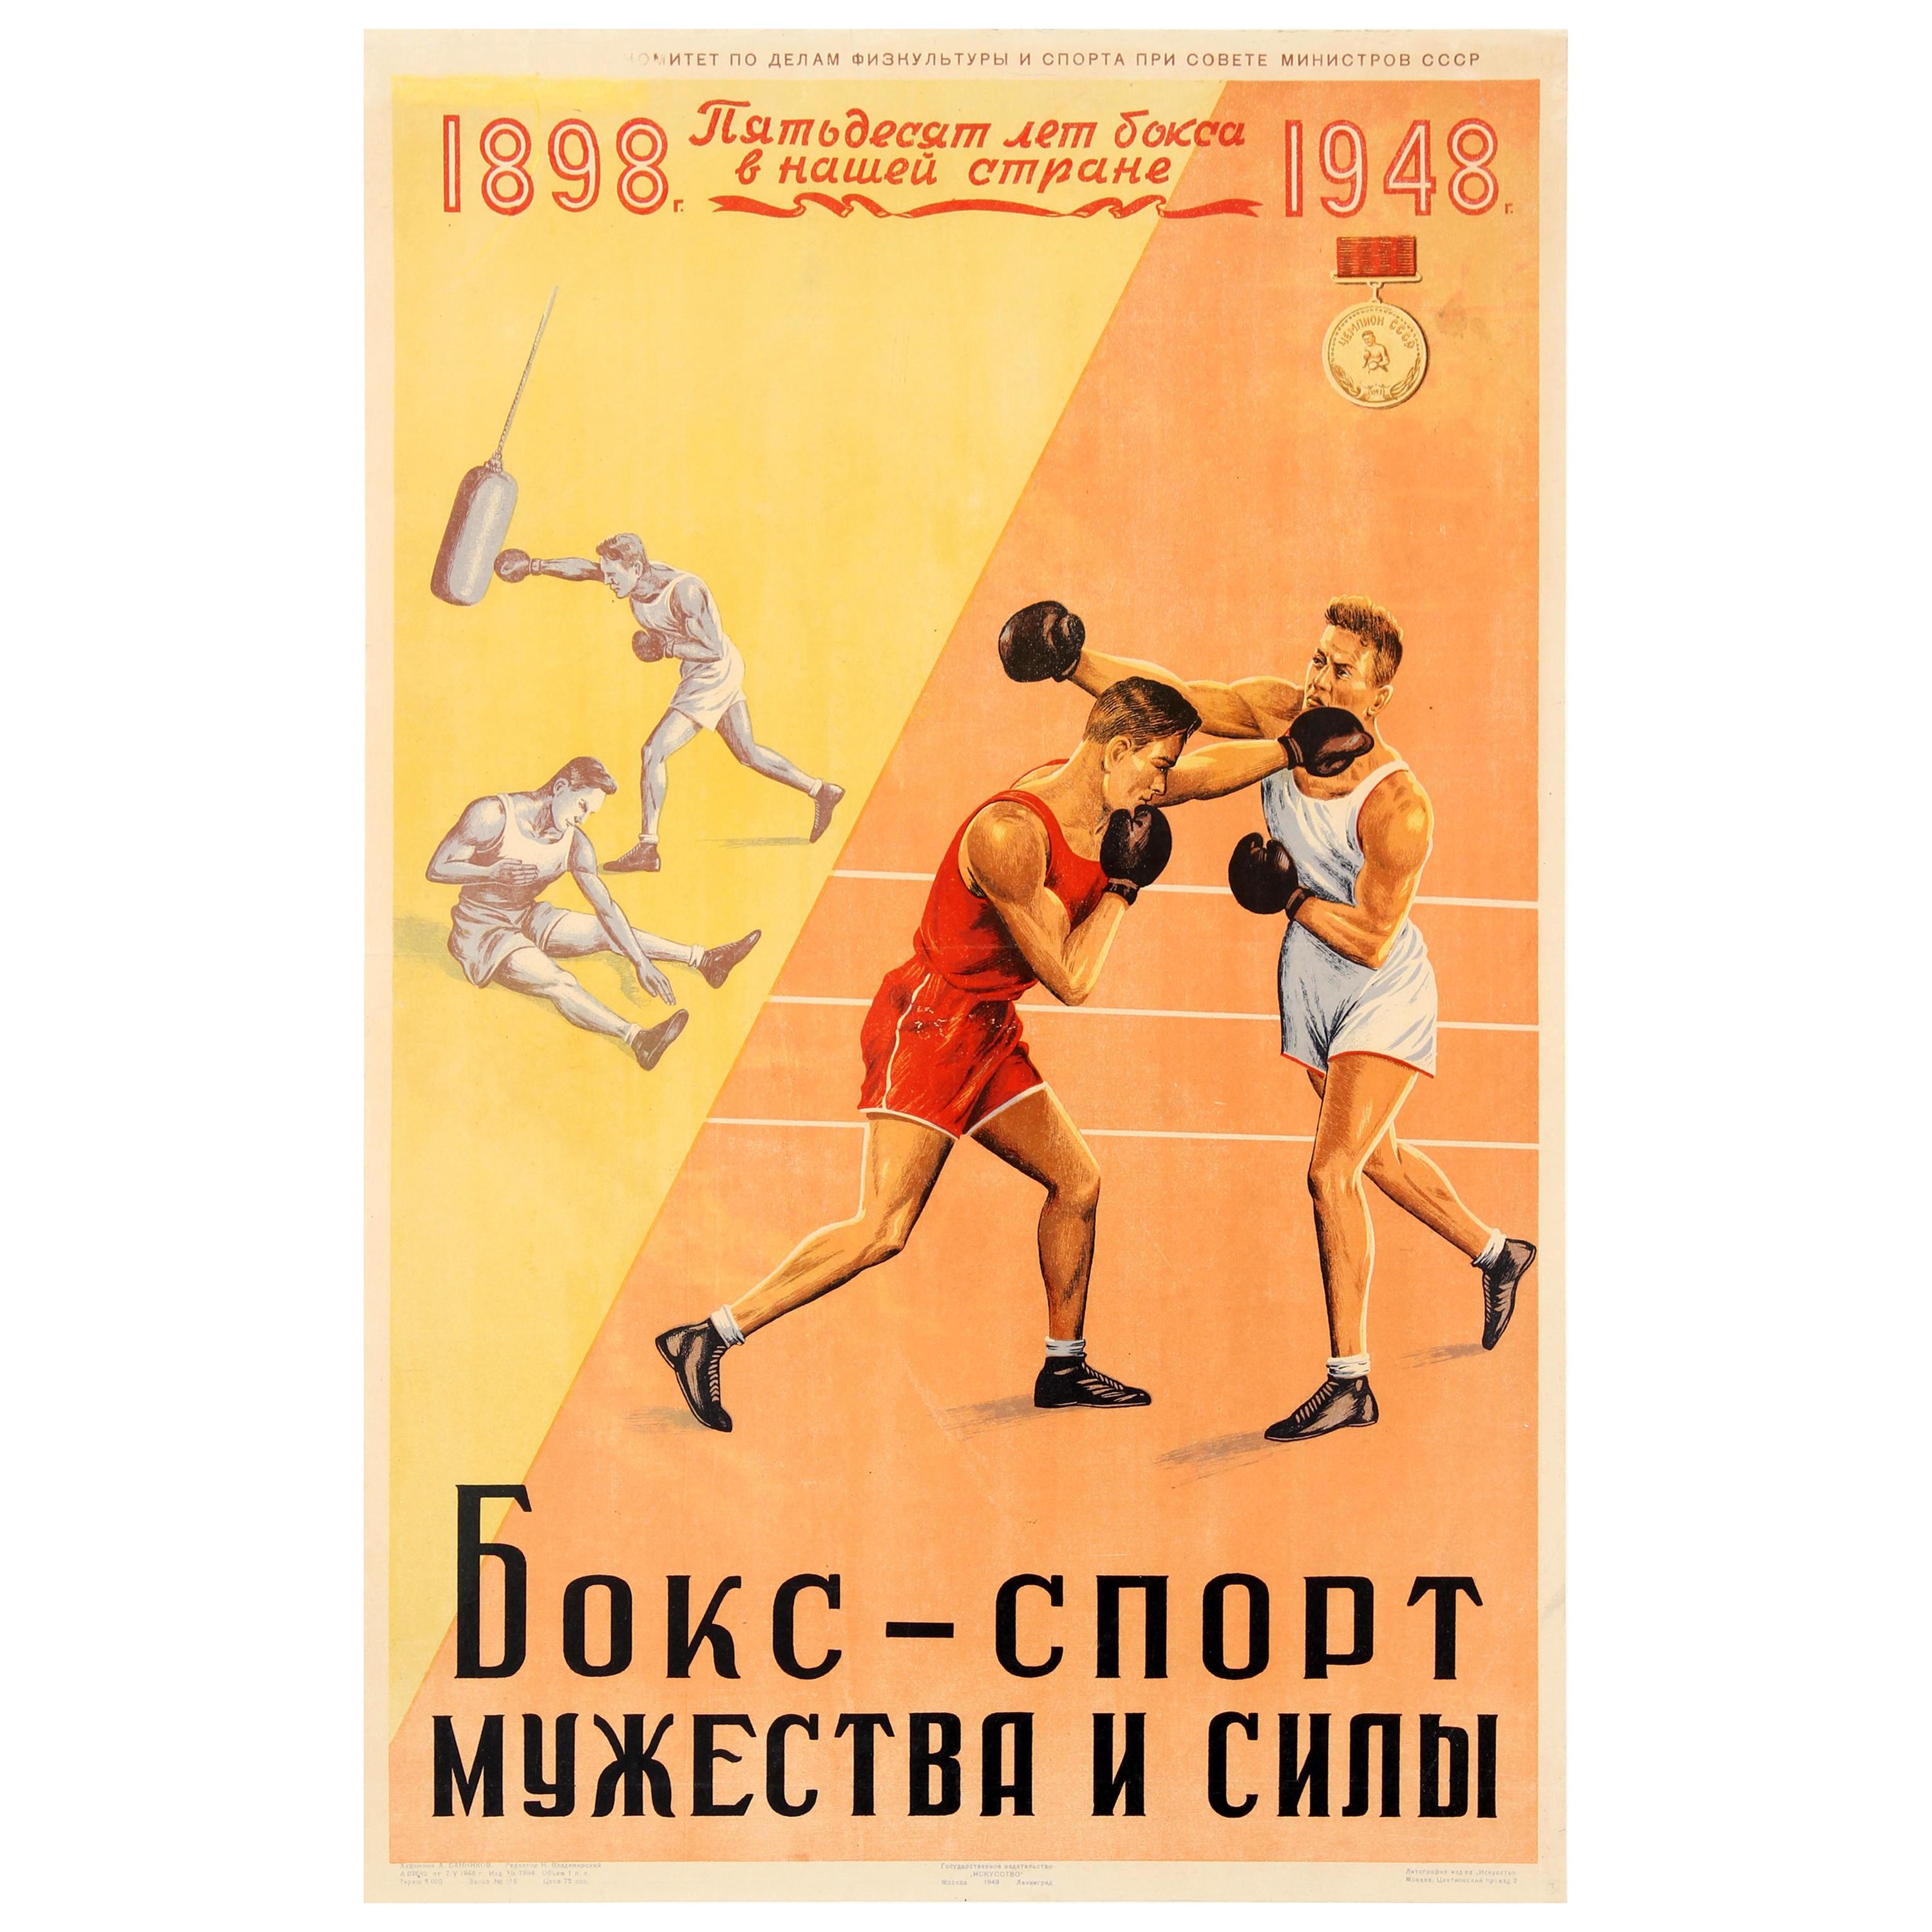 Russian Soviet Sports Posters MINT! 